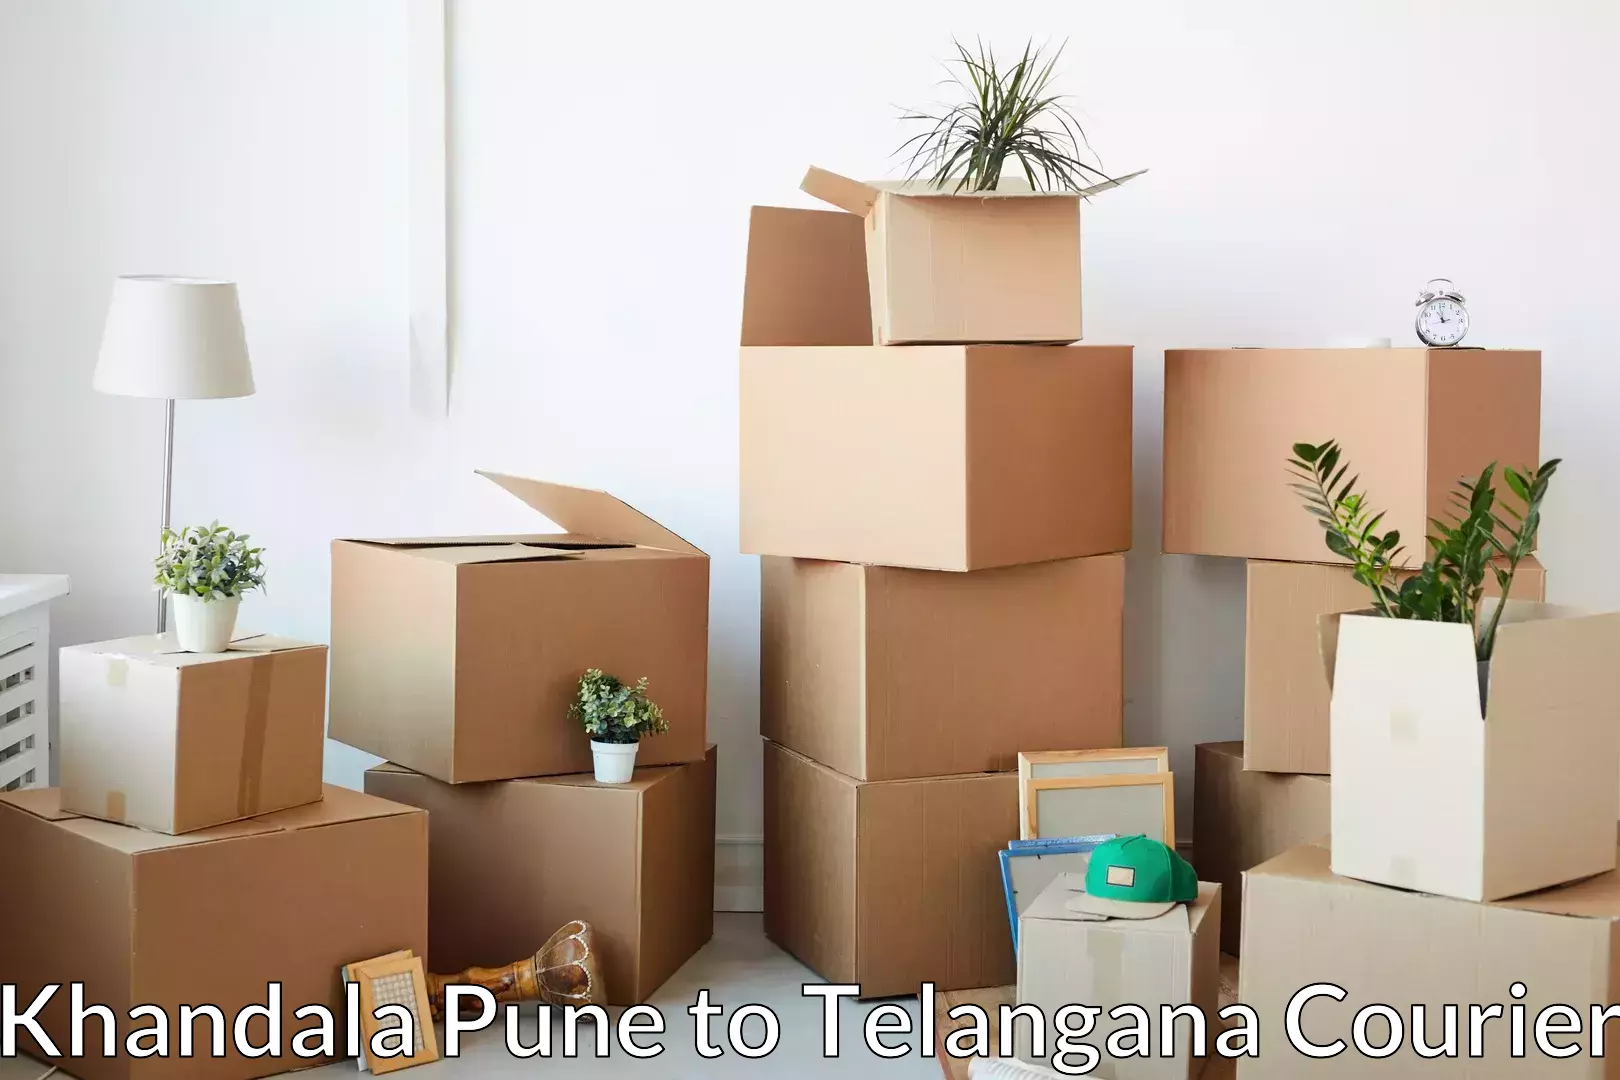 Professional moving assistance Khandala Pune to Yellandu